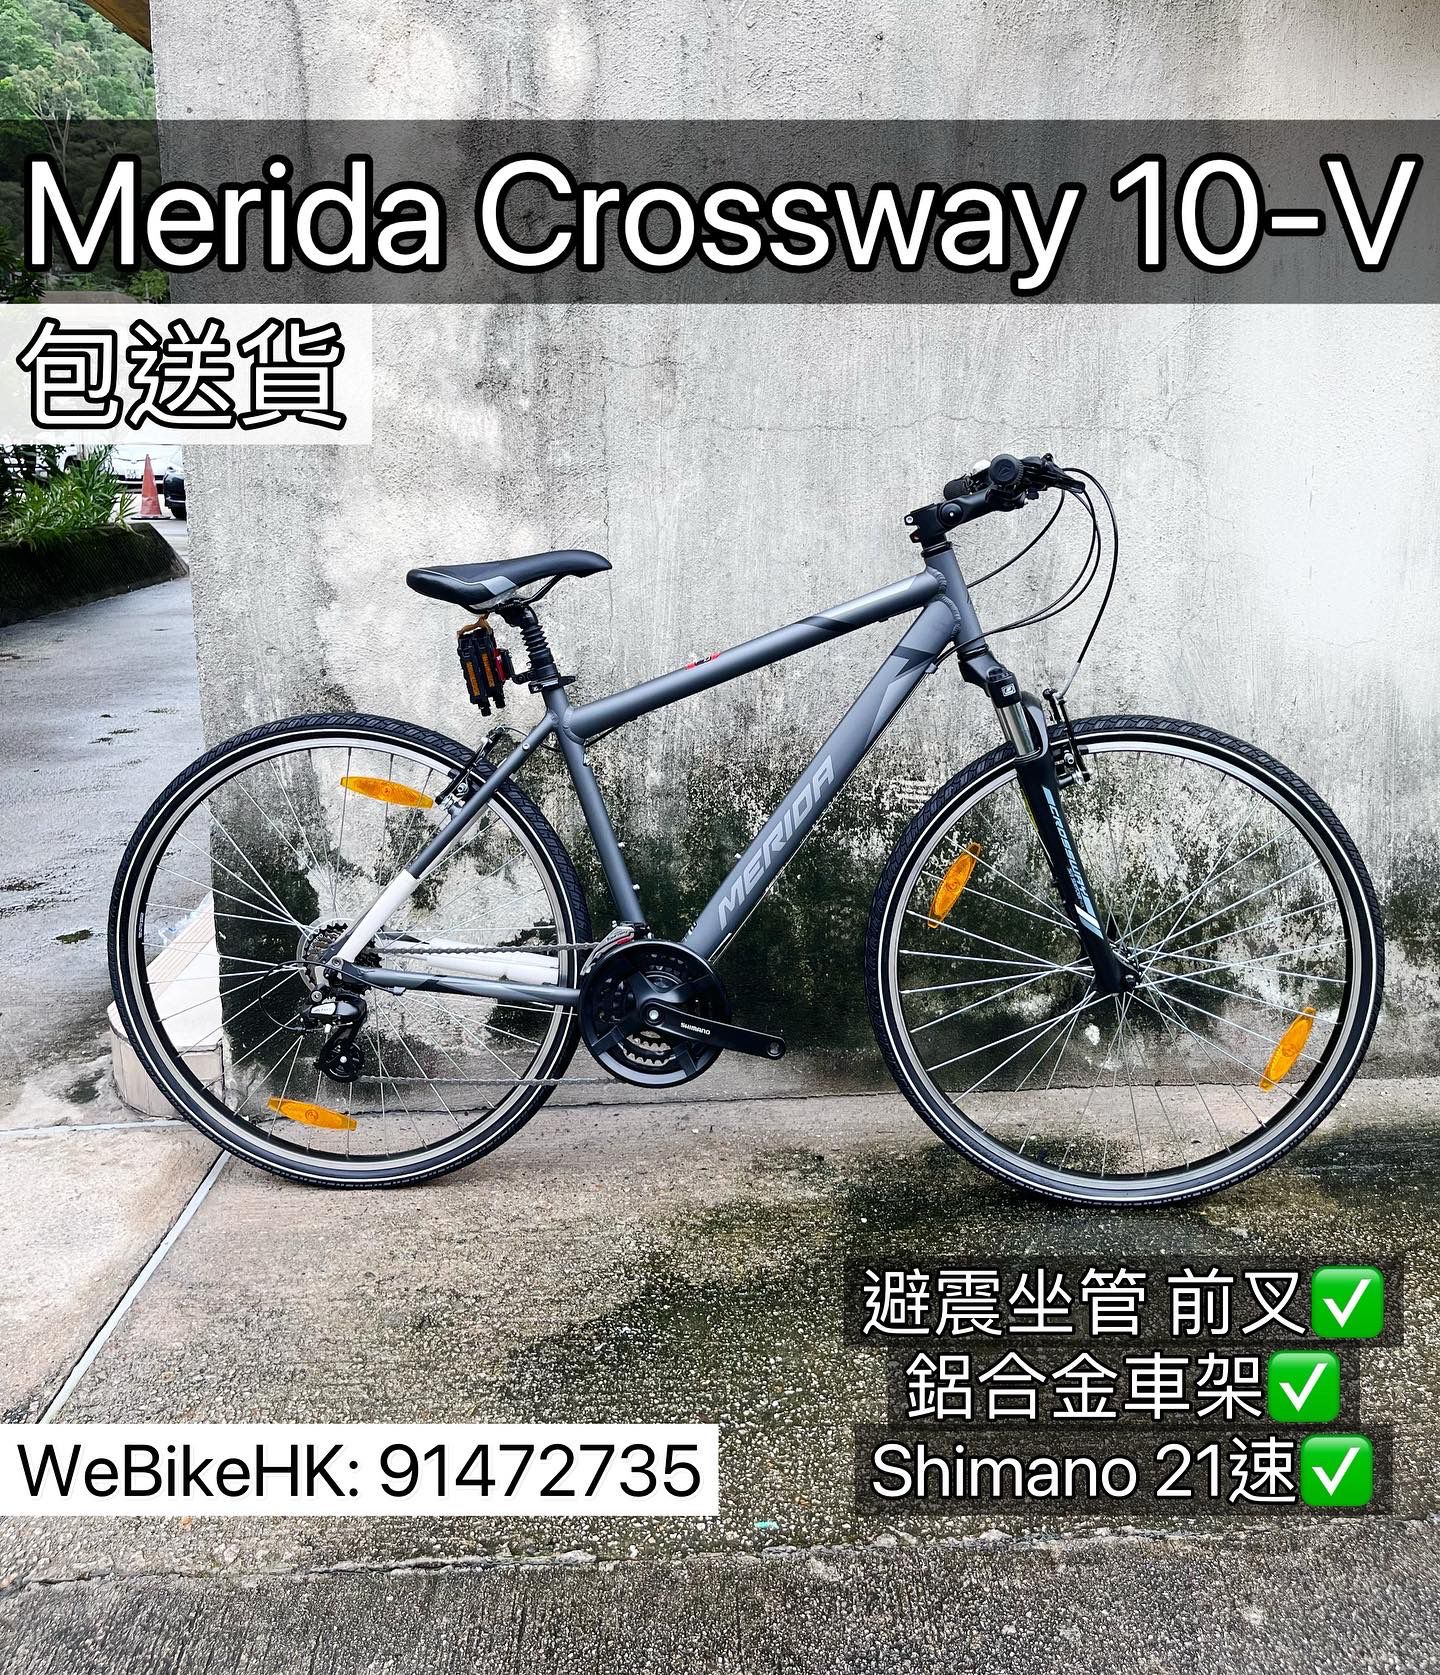 Crossway 10-V 